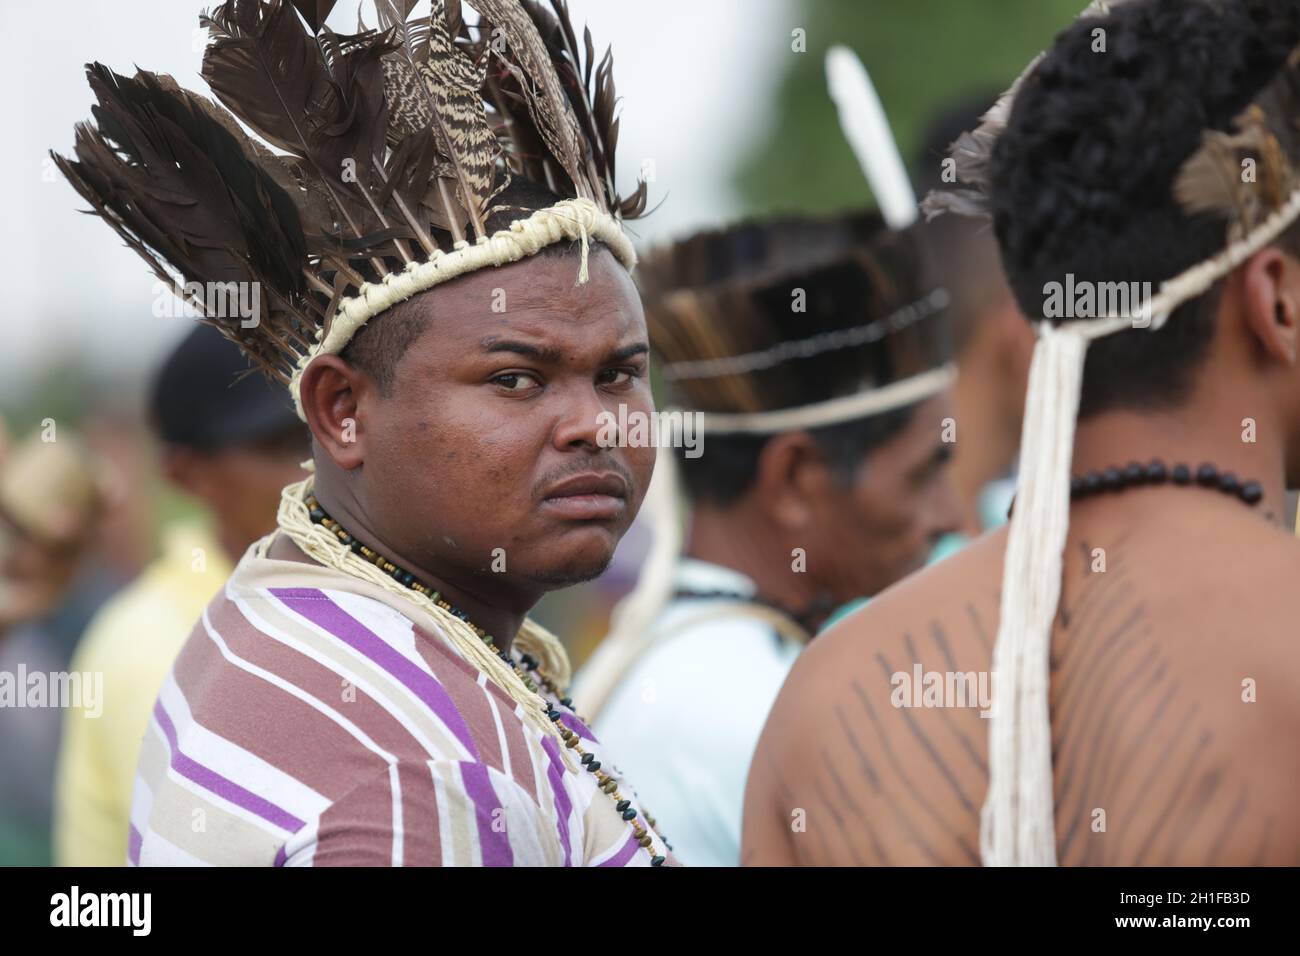 salvador, bahia / brésil - 29 mai 2017: Les Indiens de diverses tribus et groupes ethniques de Bahia campent à Salvador (BA) pour discuter de la conjoncture politique Banque D'Images